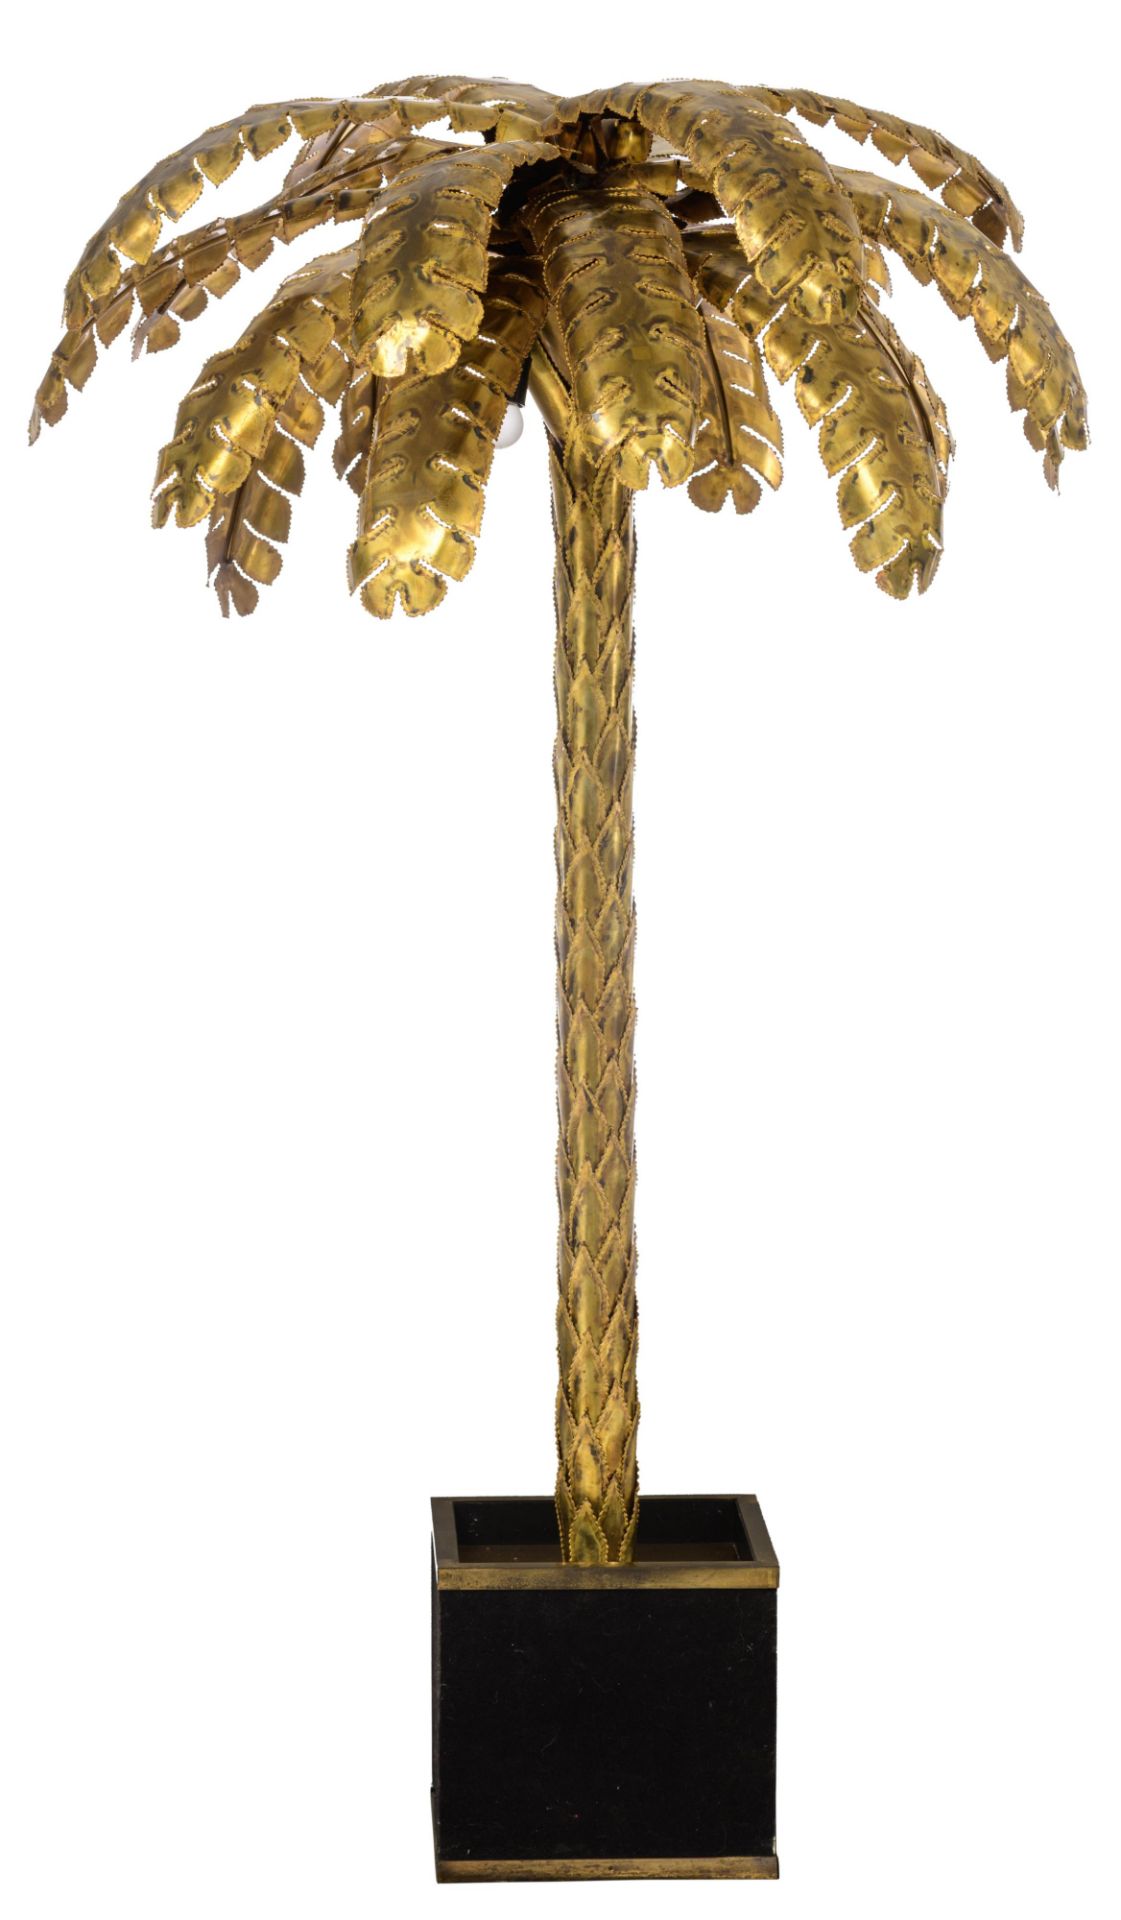 A vintage brass '70s design palm tree lamp by Maison Jansen, Paris, H 162 cm